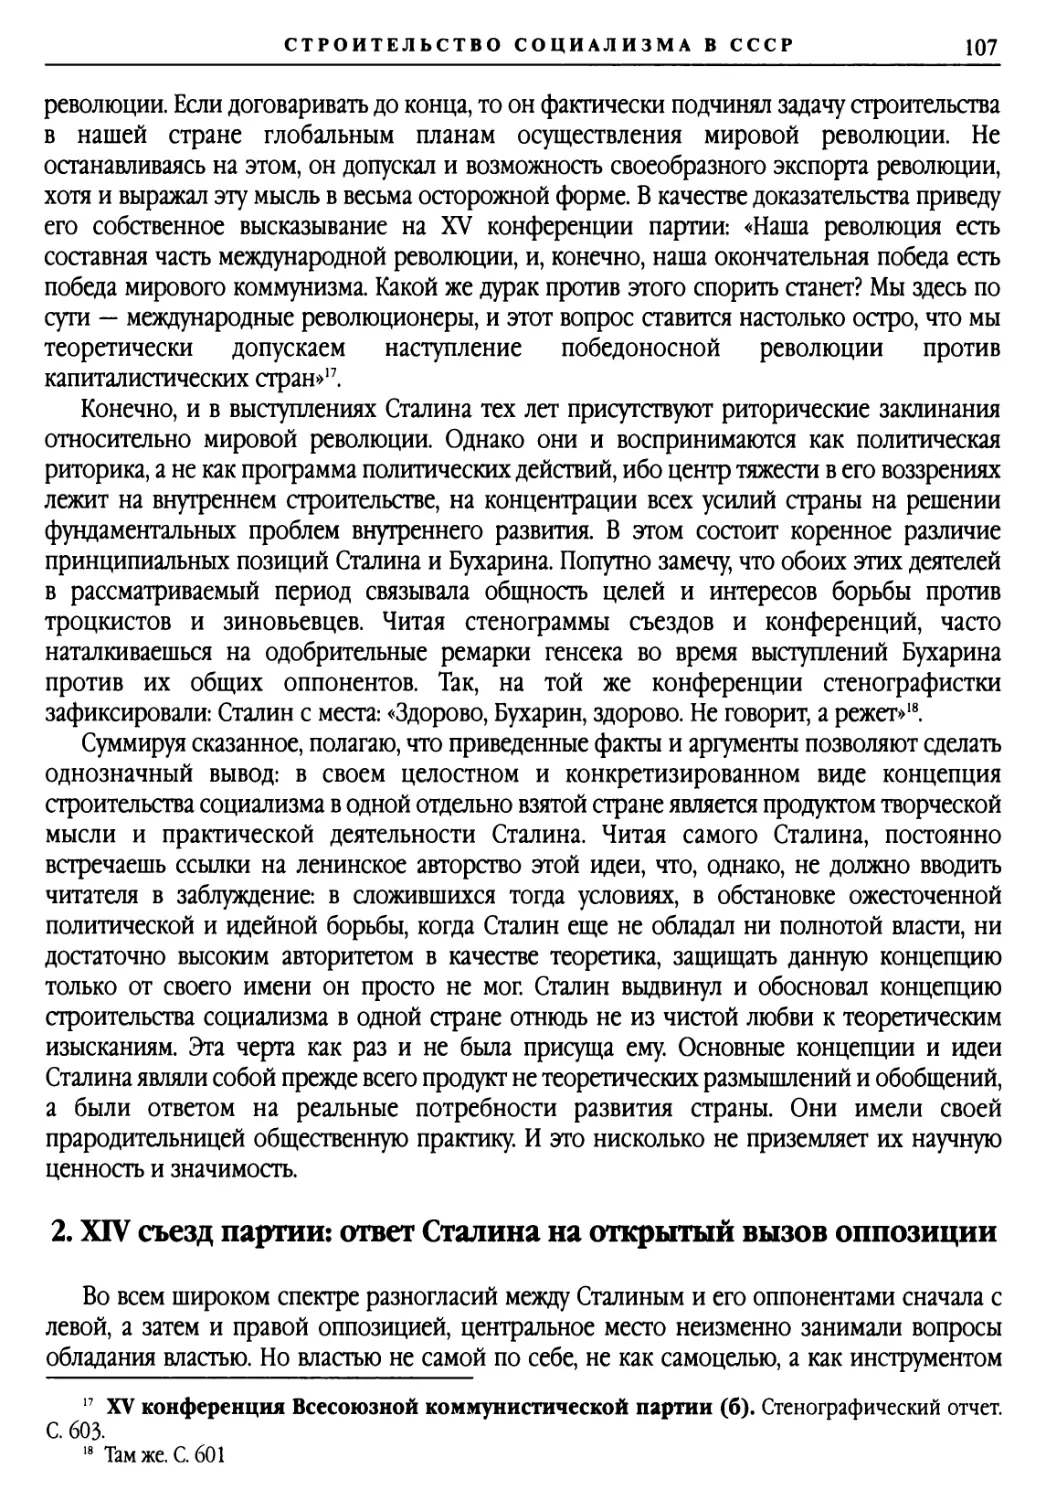 2. XIV съезд партии: ответ Сталина на открытый вызов оппозиции